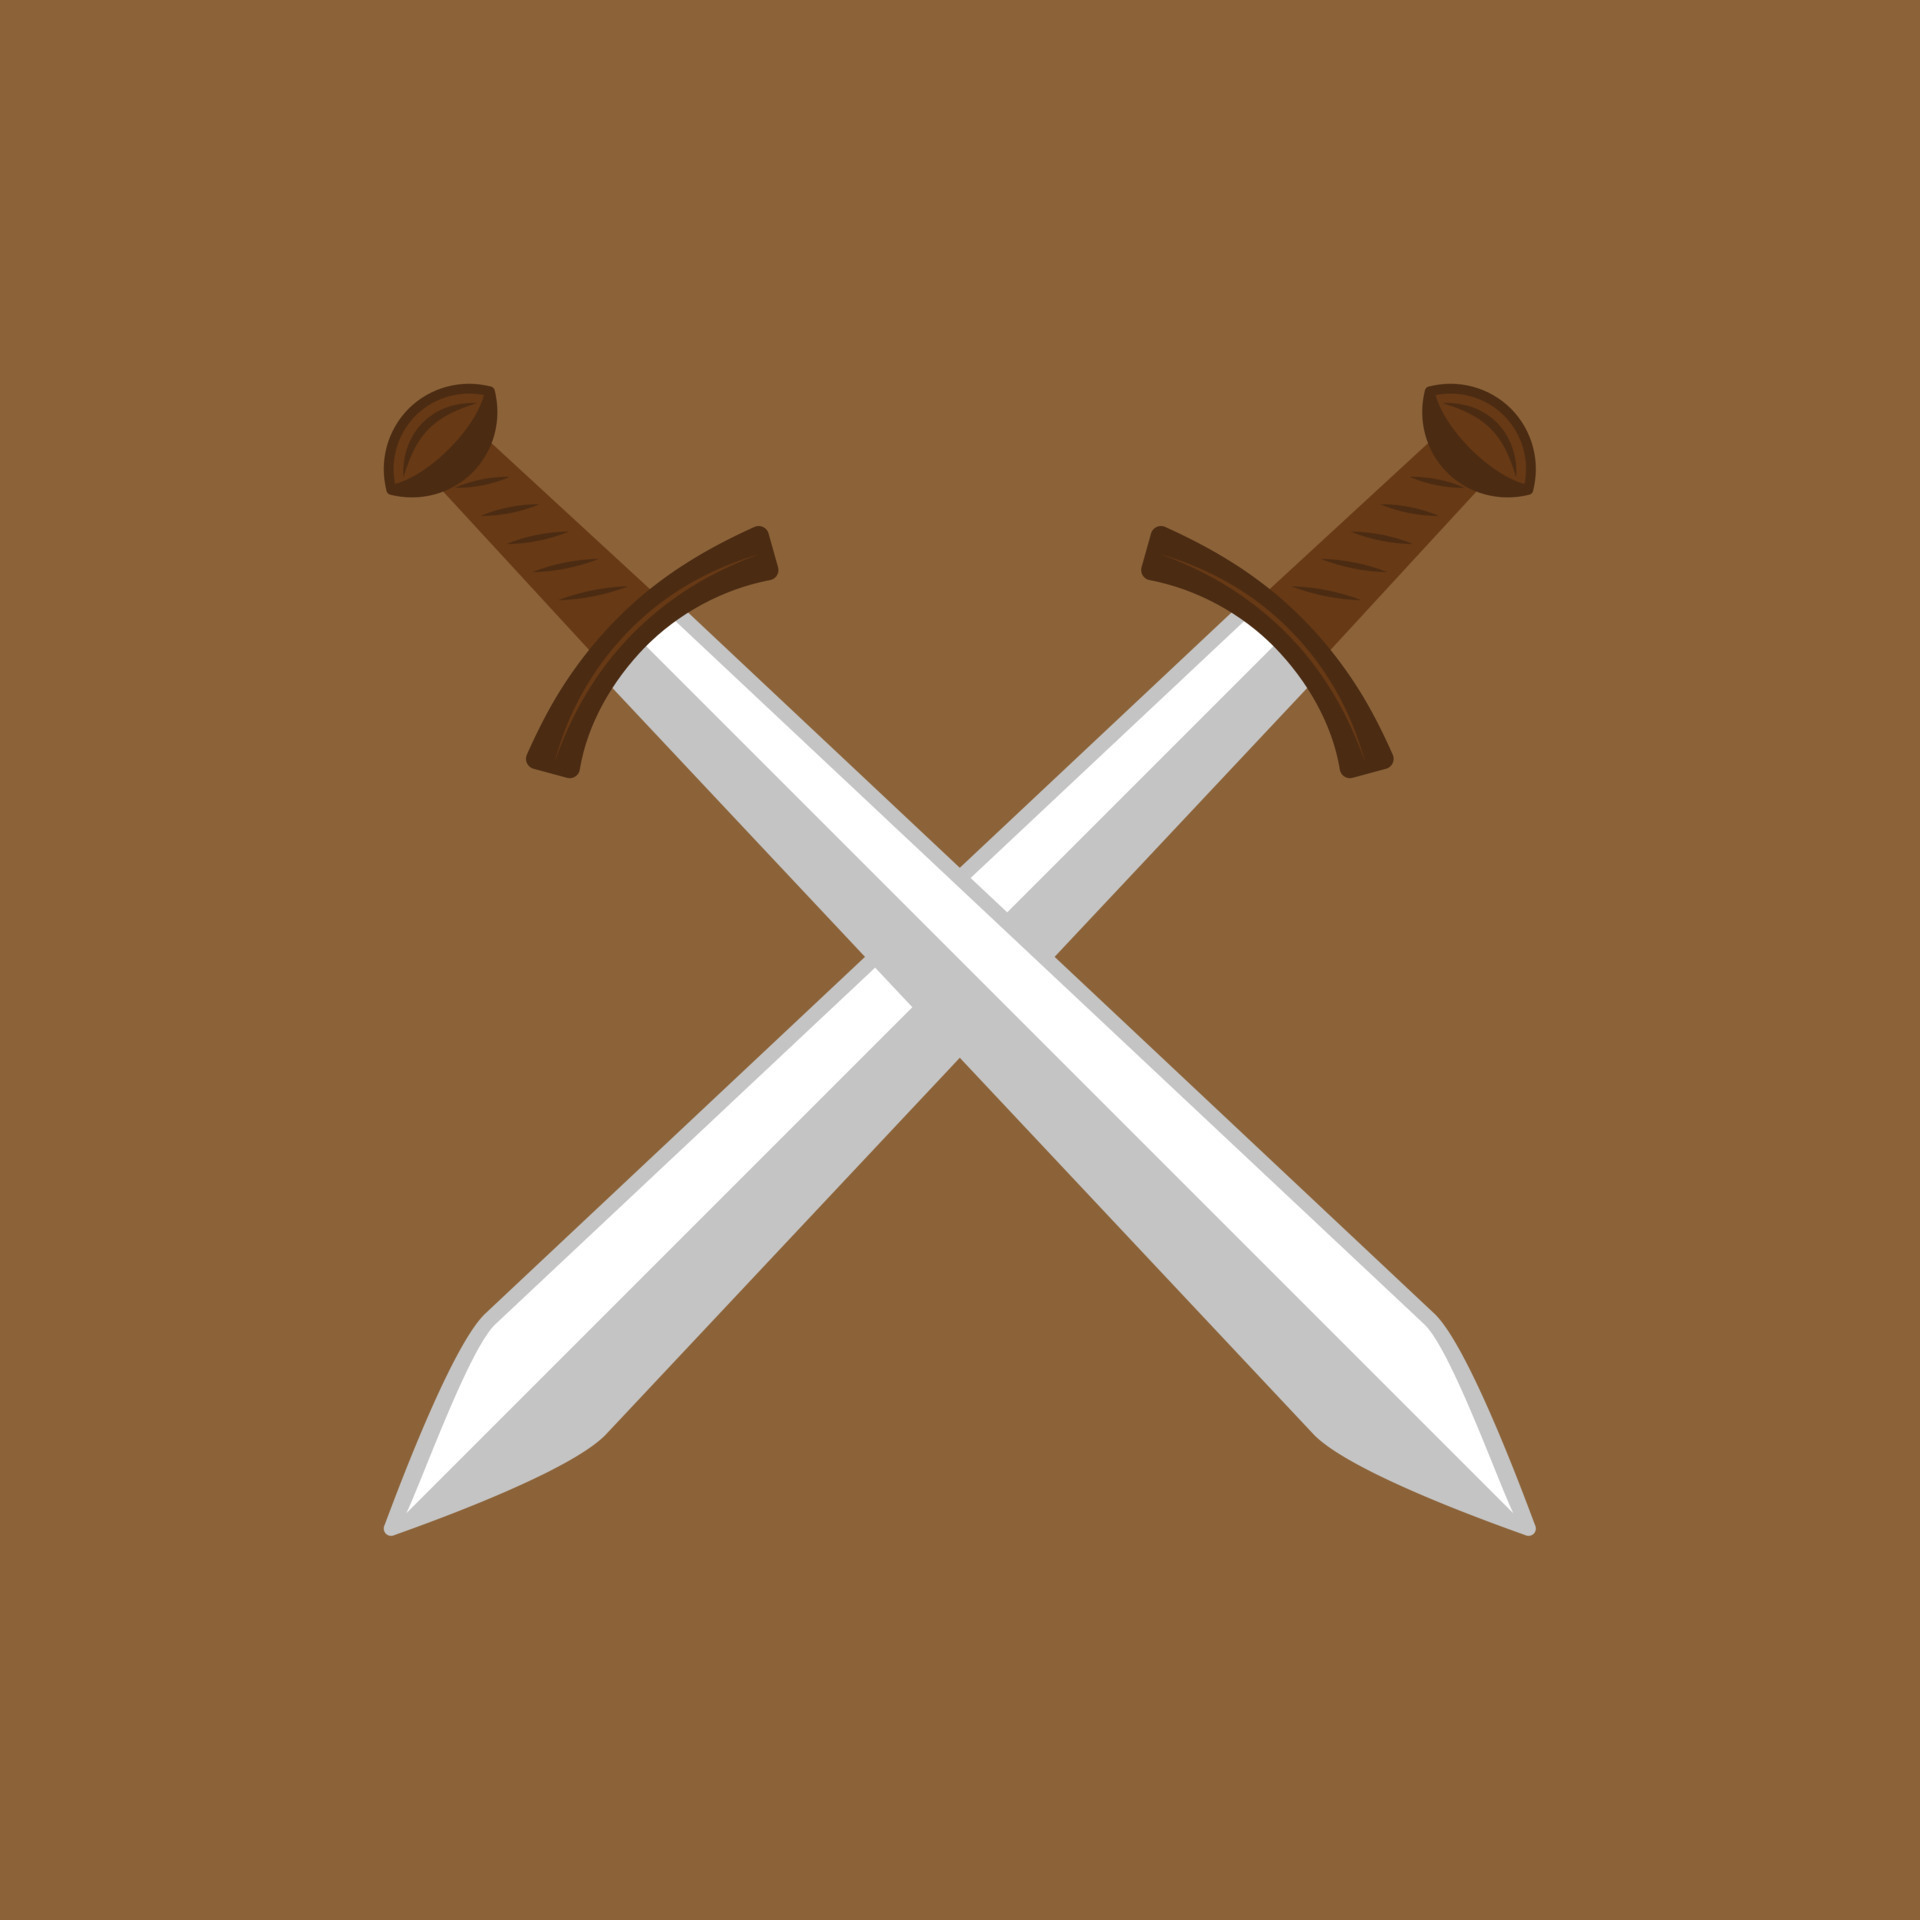 Crossed Swords Objects Sticker - Crossed Swords Objects Joypixels